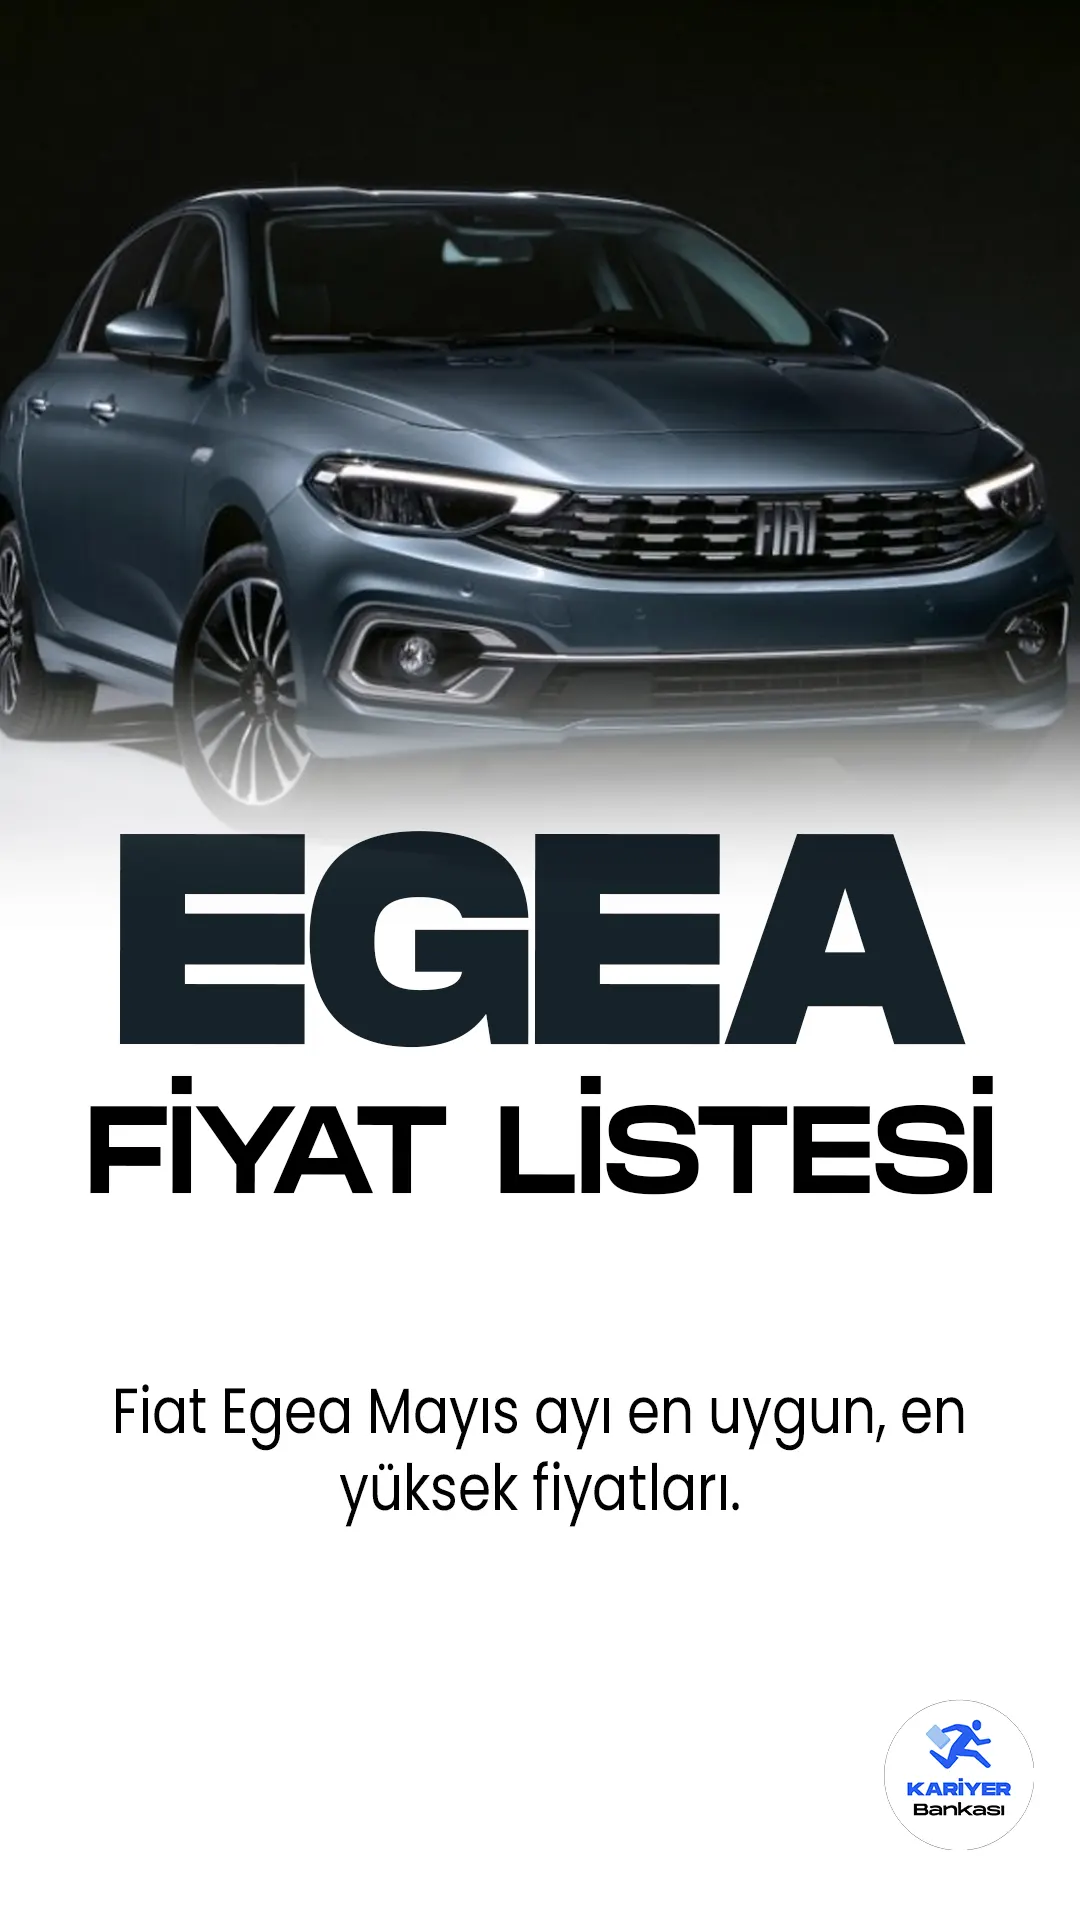 Fiat Eega Mayıs 2023 Fiyat Listesi Yayımlandı. Türkiye'nin en popüler araç markaları arasında ilk sıralarda yer alan Fiat, araç sürücülerinin favori markası olmaya devam ediyor. Fiat Egea, İtalyan otomobil üreticisi Fiat'ın popüler bir araç modelidir.